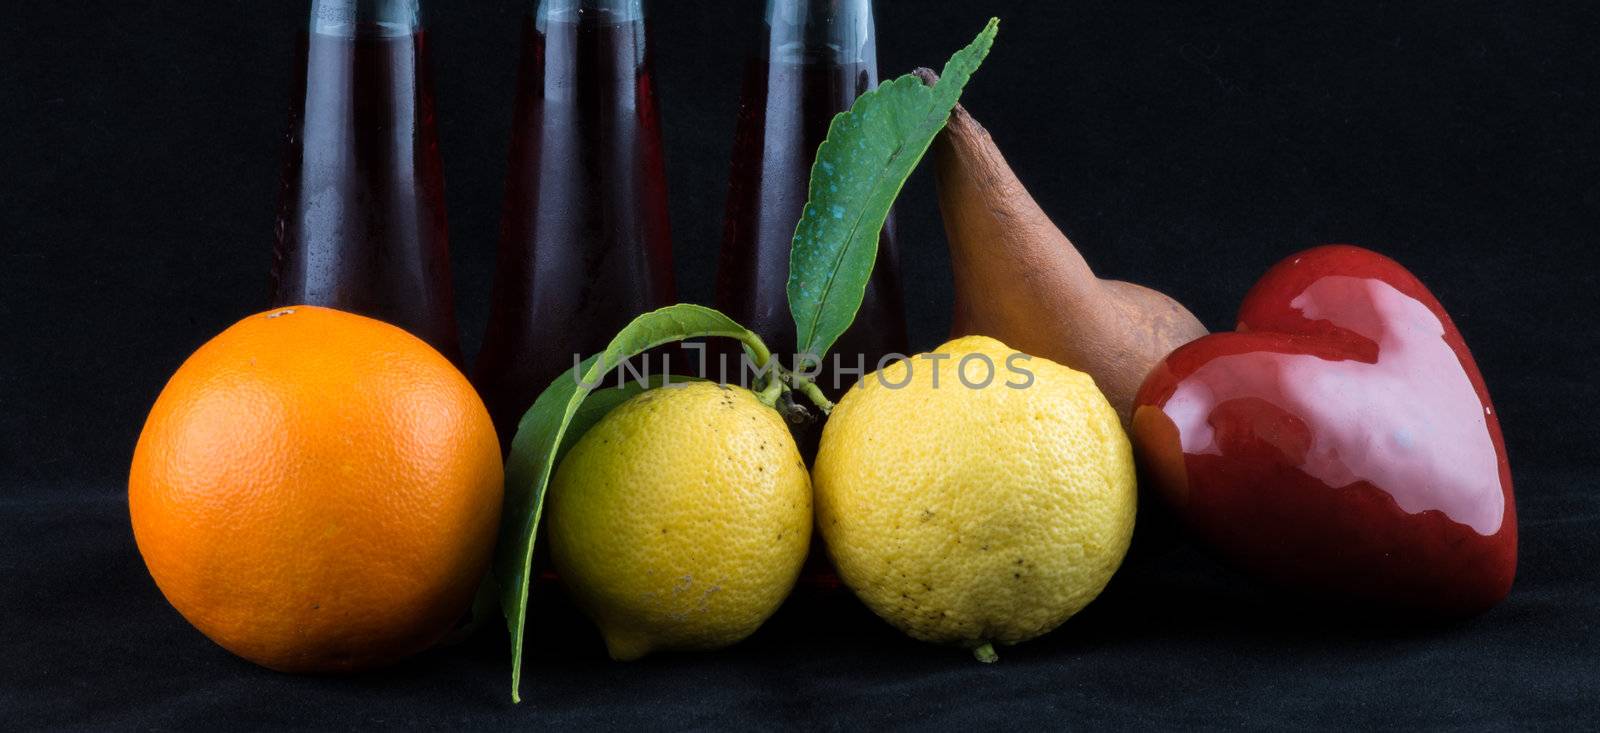 Orange, Lemon and Pear on black background by jovannig